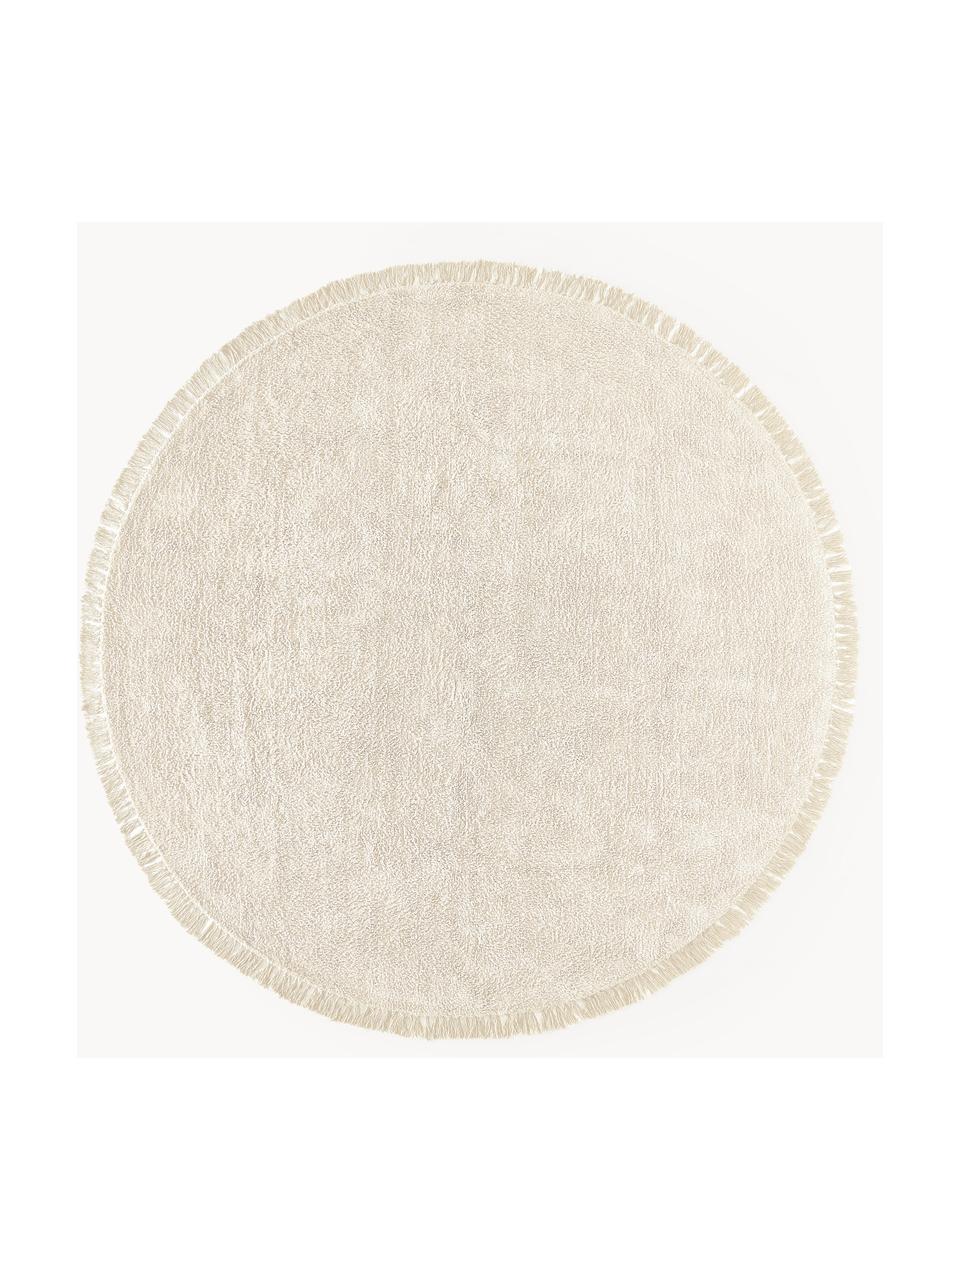 Tapis rond en coton tufté main Daya, Blanc crème, Ø 120 cm (taille S)